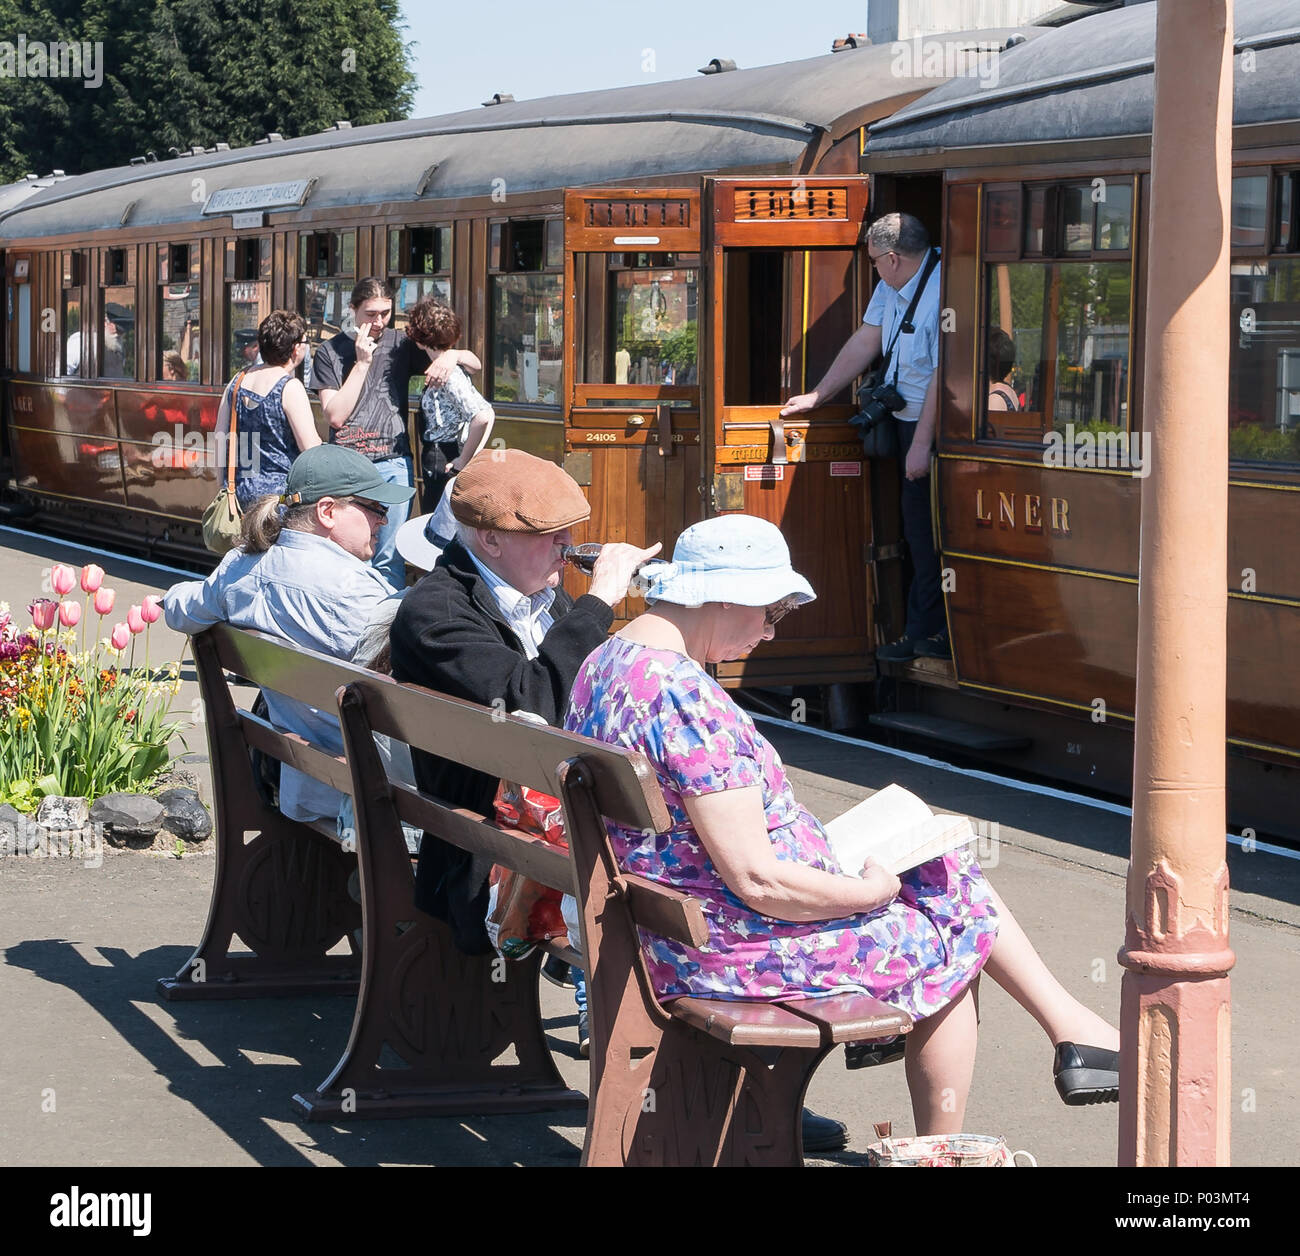 Scène de la plate-forme occupée à vintage gare dans le soleil d'été. Les passagers de train & off. Assis sur le banc de la folk britannique en attente et profiter du soleil. Banque D'Images